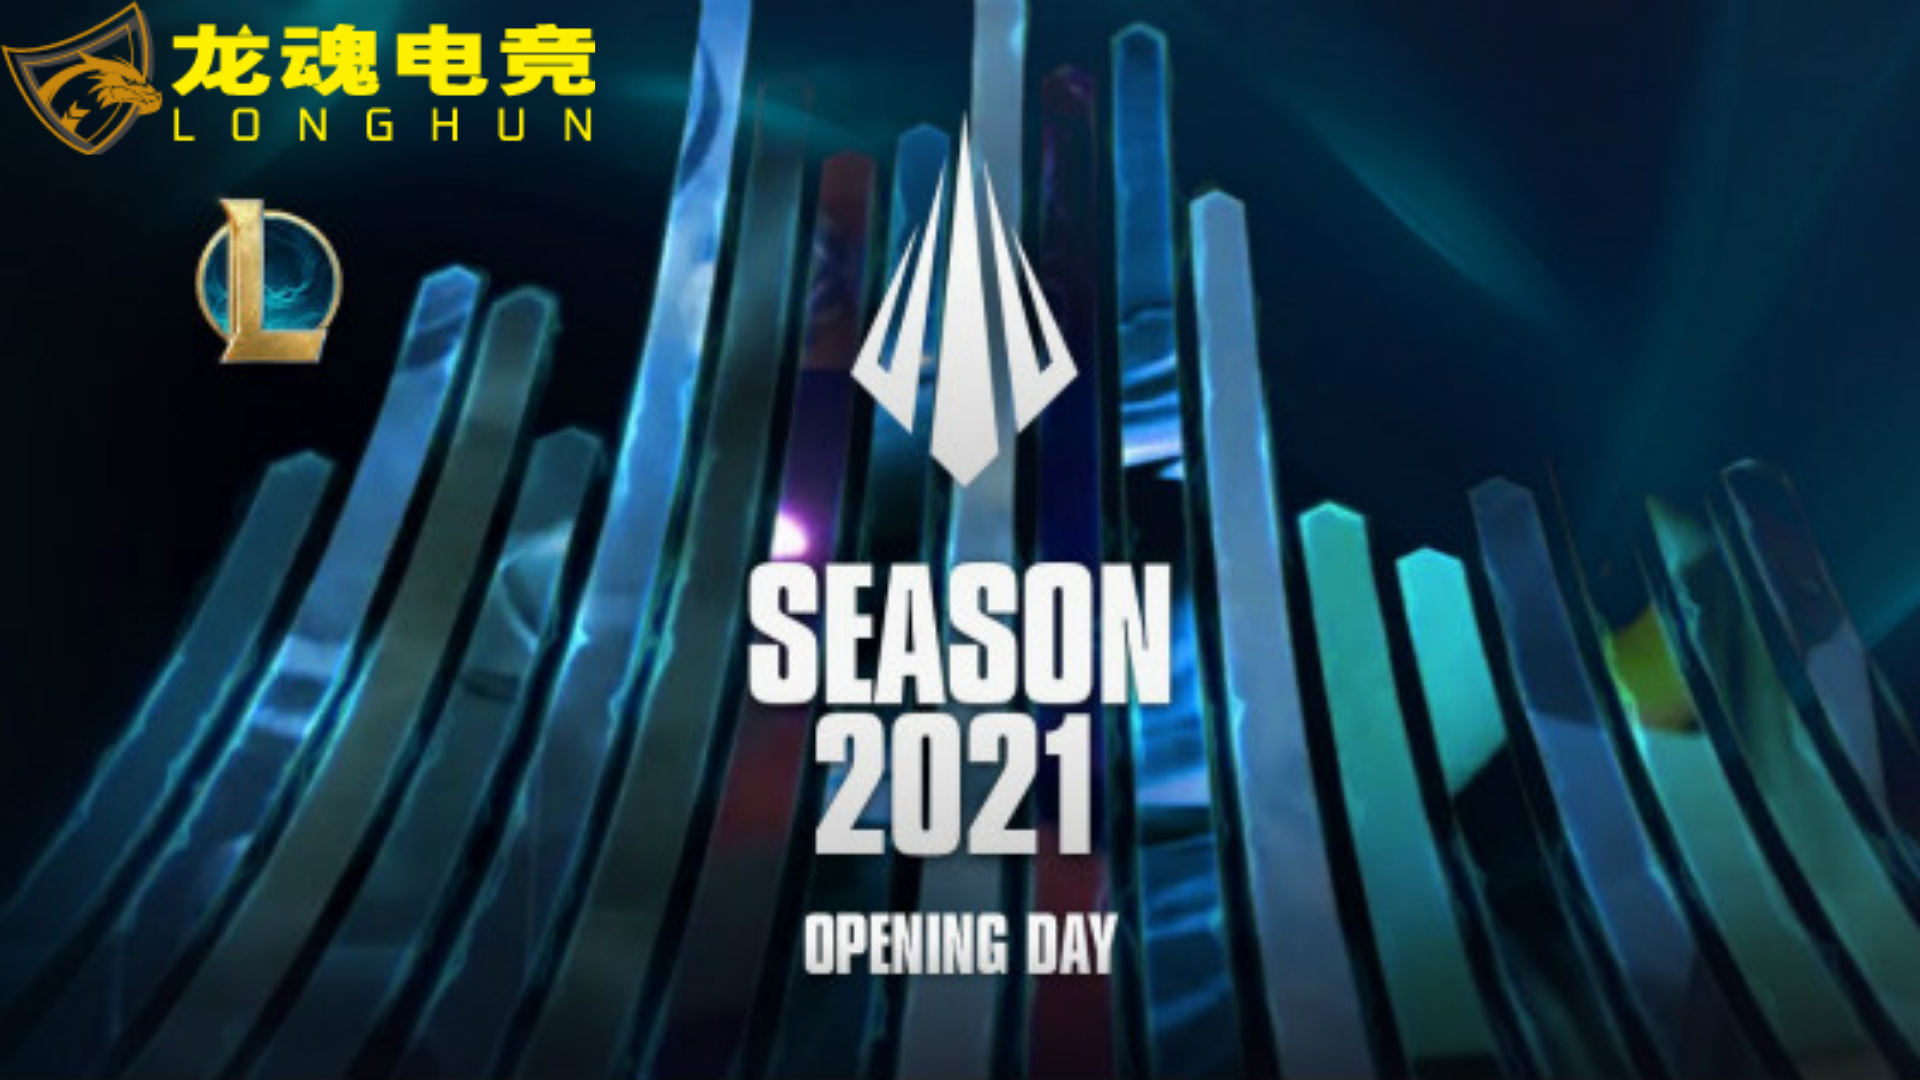  龙魂电竞-拳头官宣S11全球总决赛将在深圳举办 | 龙魂电竞